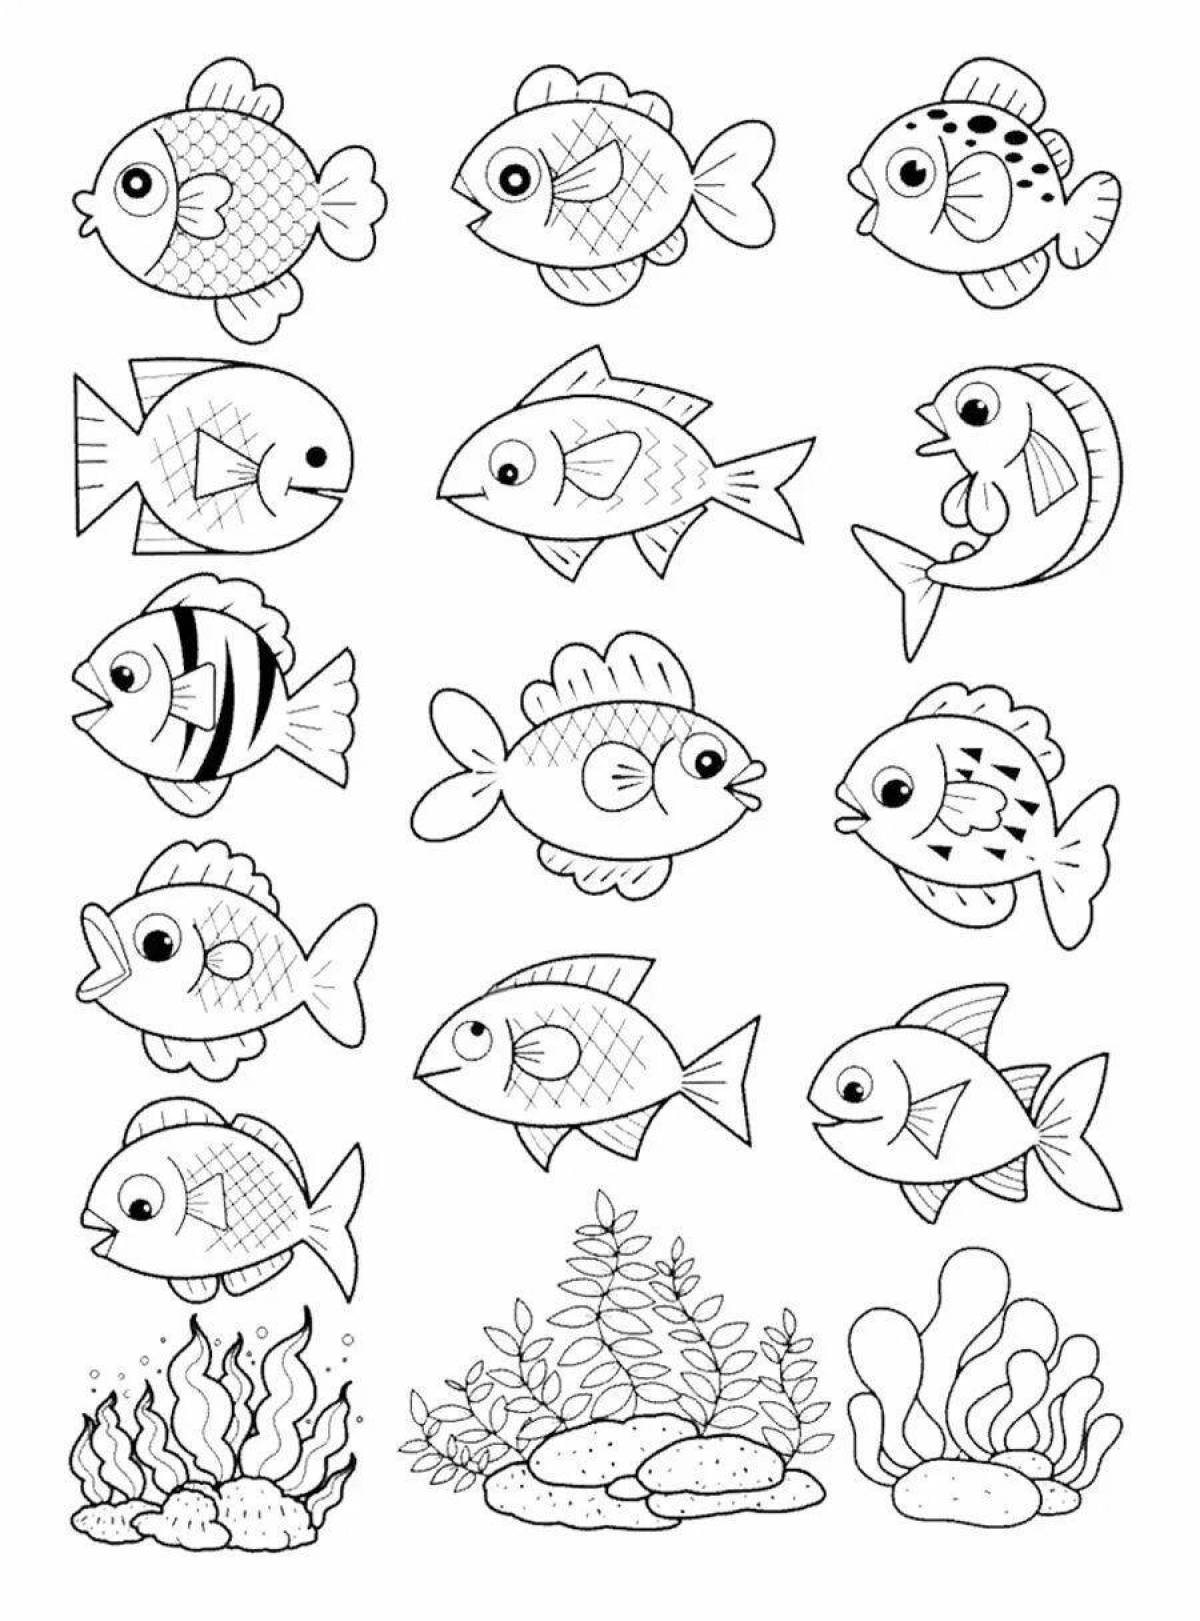 Радостная аквариумная рыбка-раскраска для детей